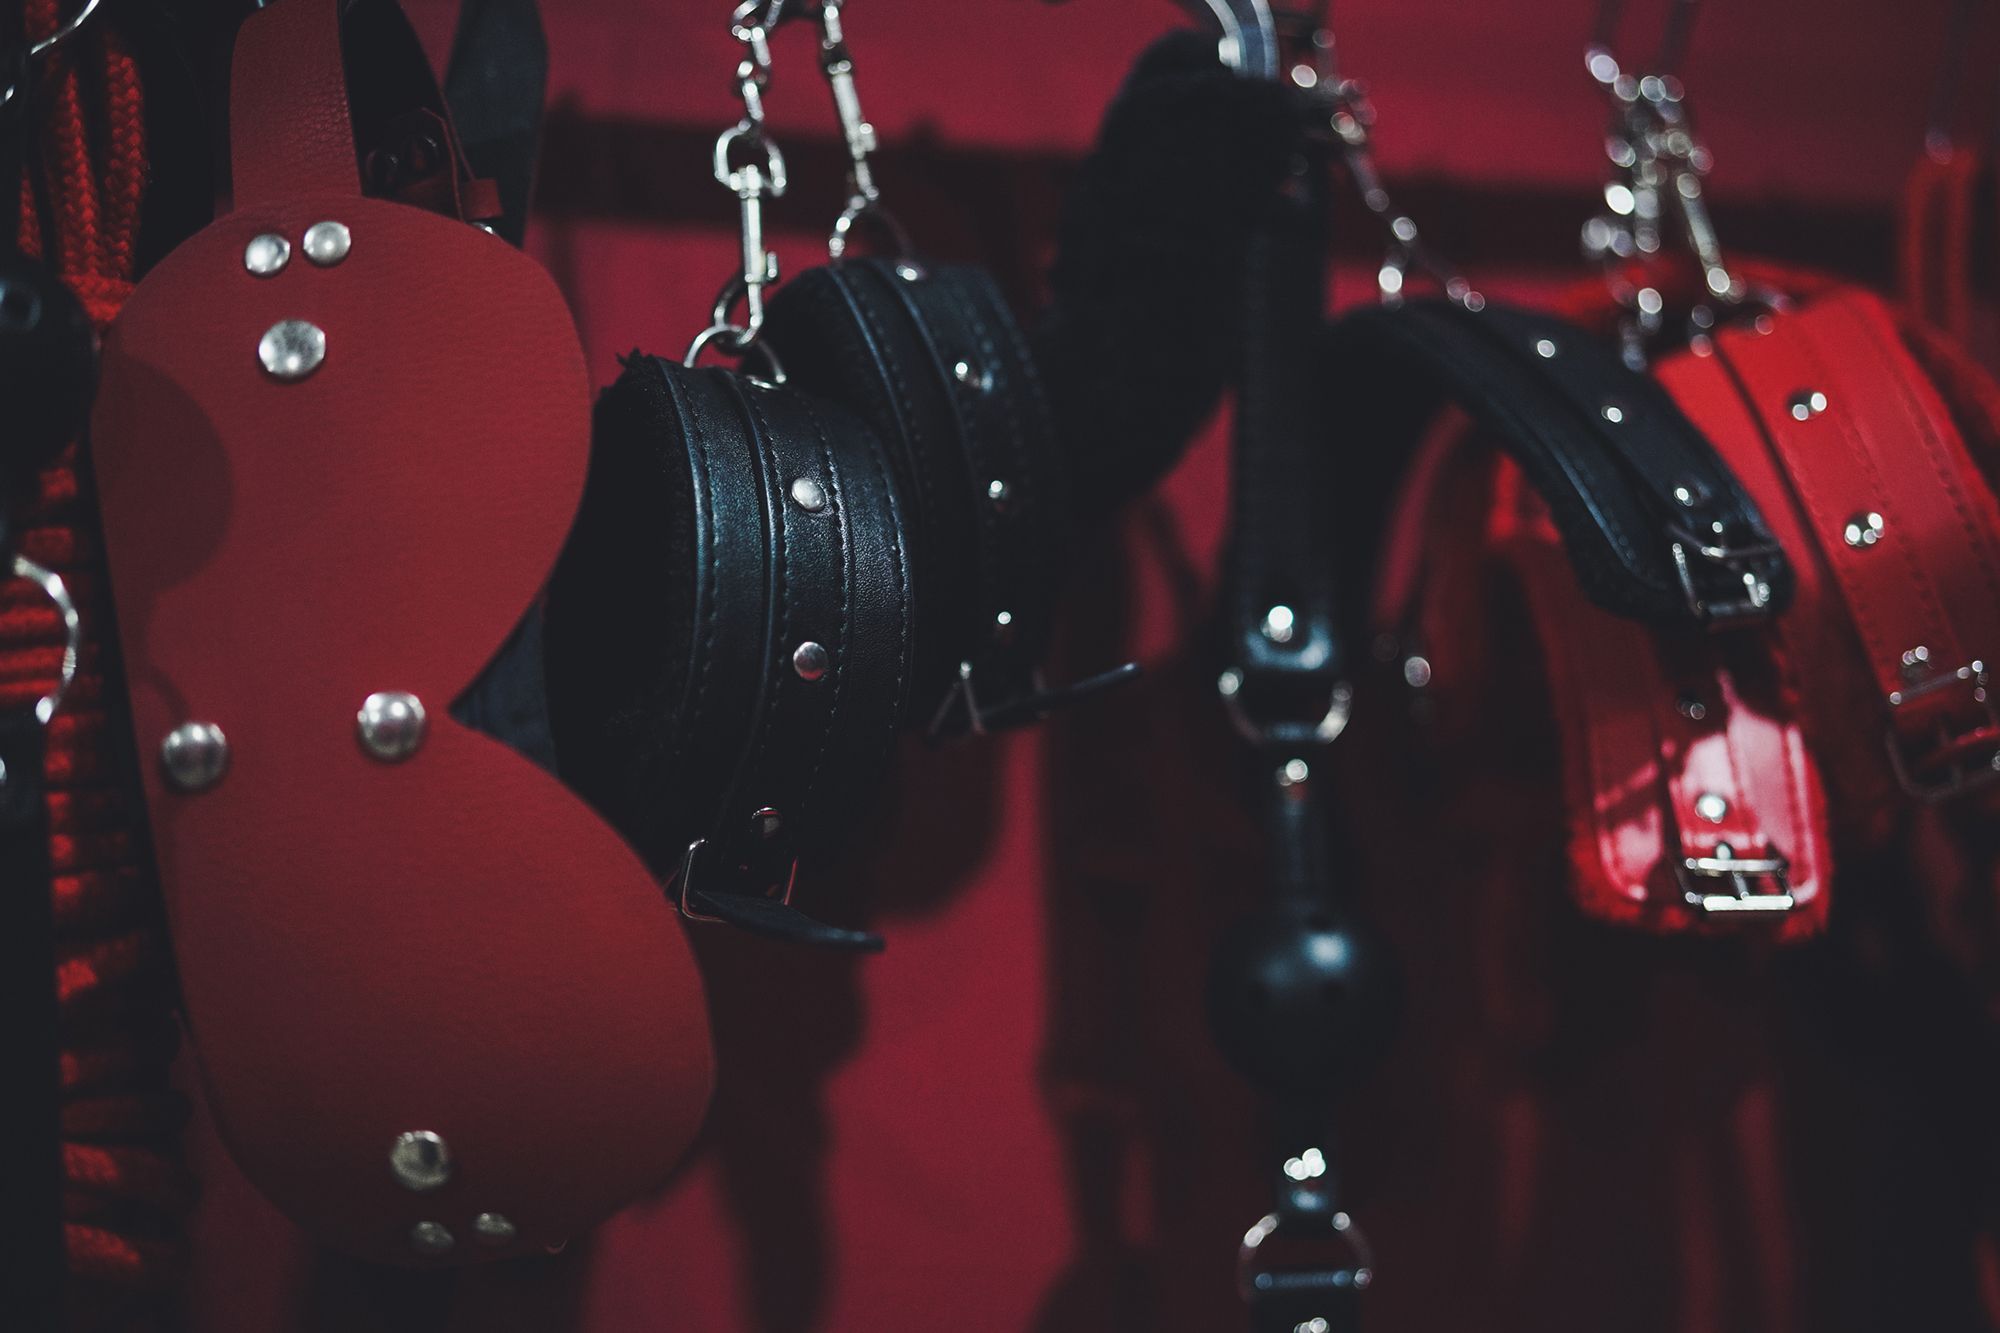 BDSM Handschellen in einer Reihe aufgehängt